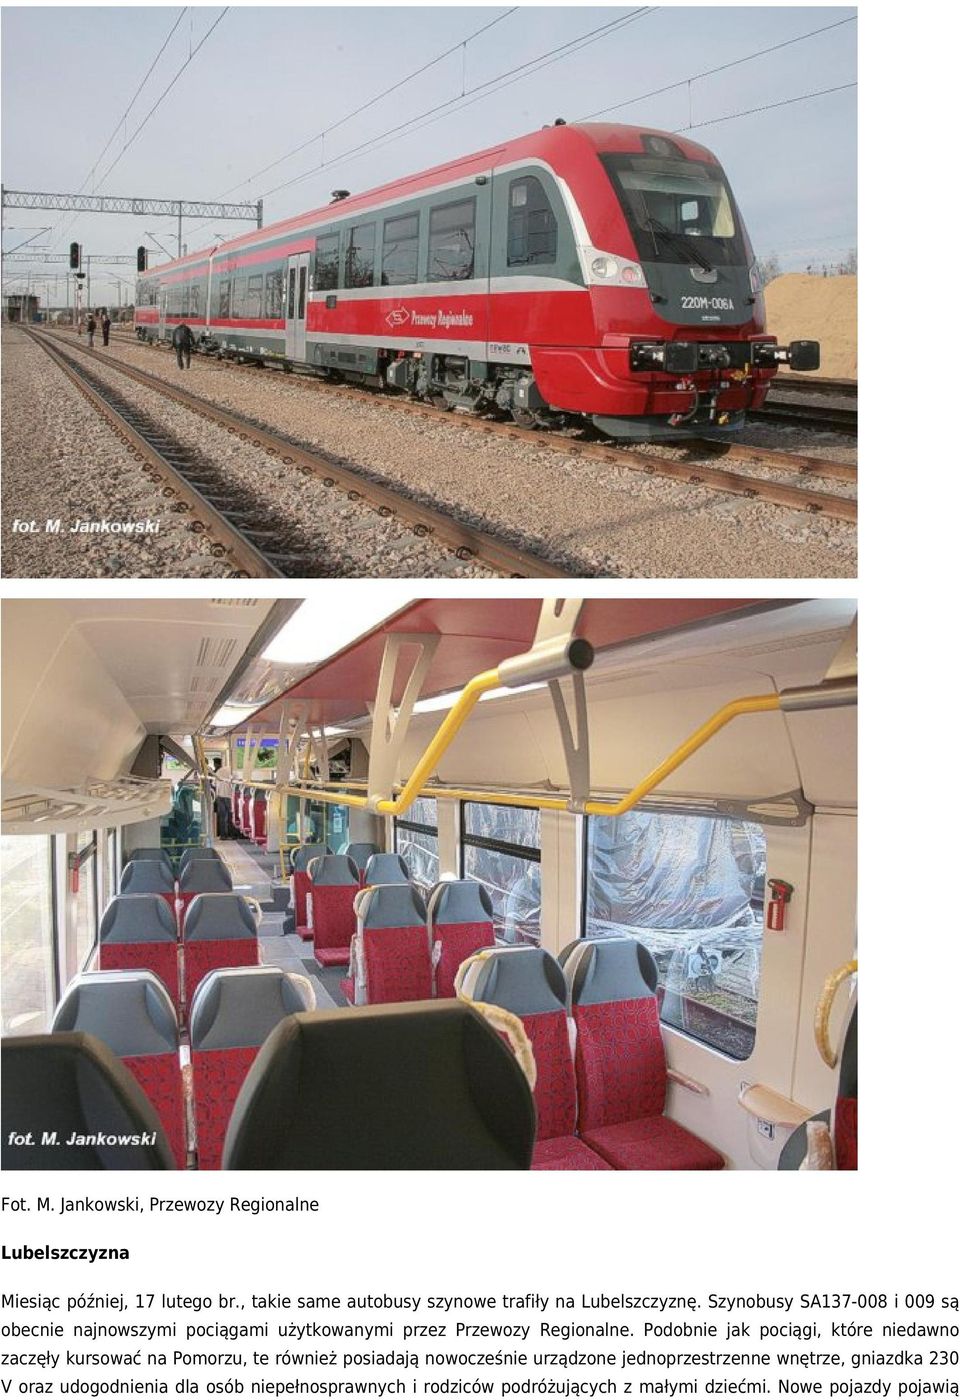 Szynobusy SA137-008 i 009 są obecnie najnowszymi pociągami użytkowanymi przez Przewozy Regionalne.